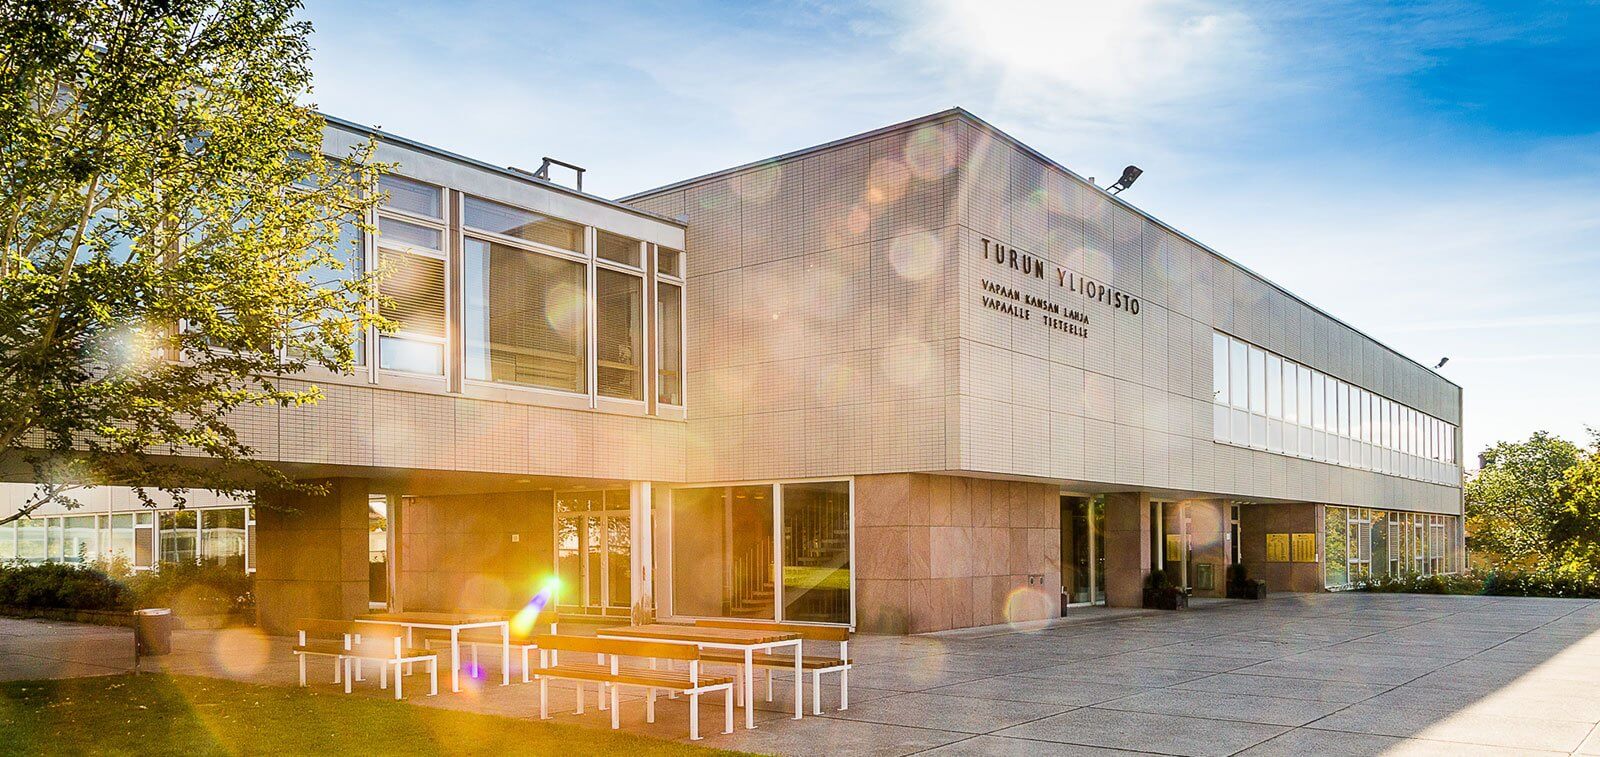 Review trường Đại học Turku (Turun yliopisto)